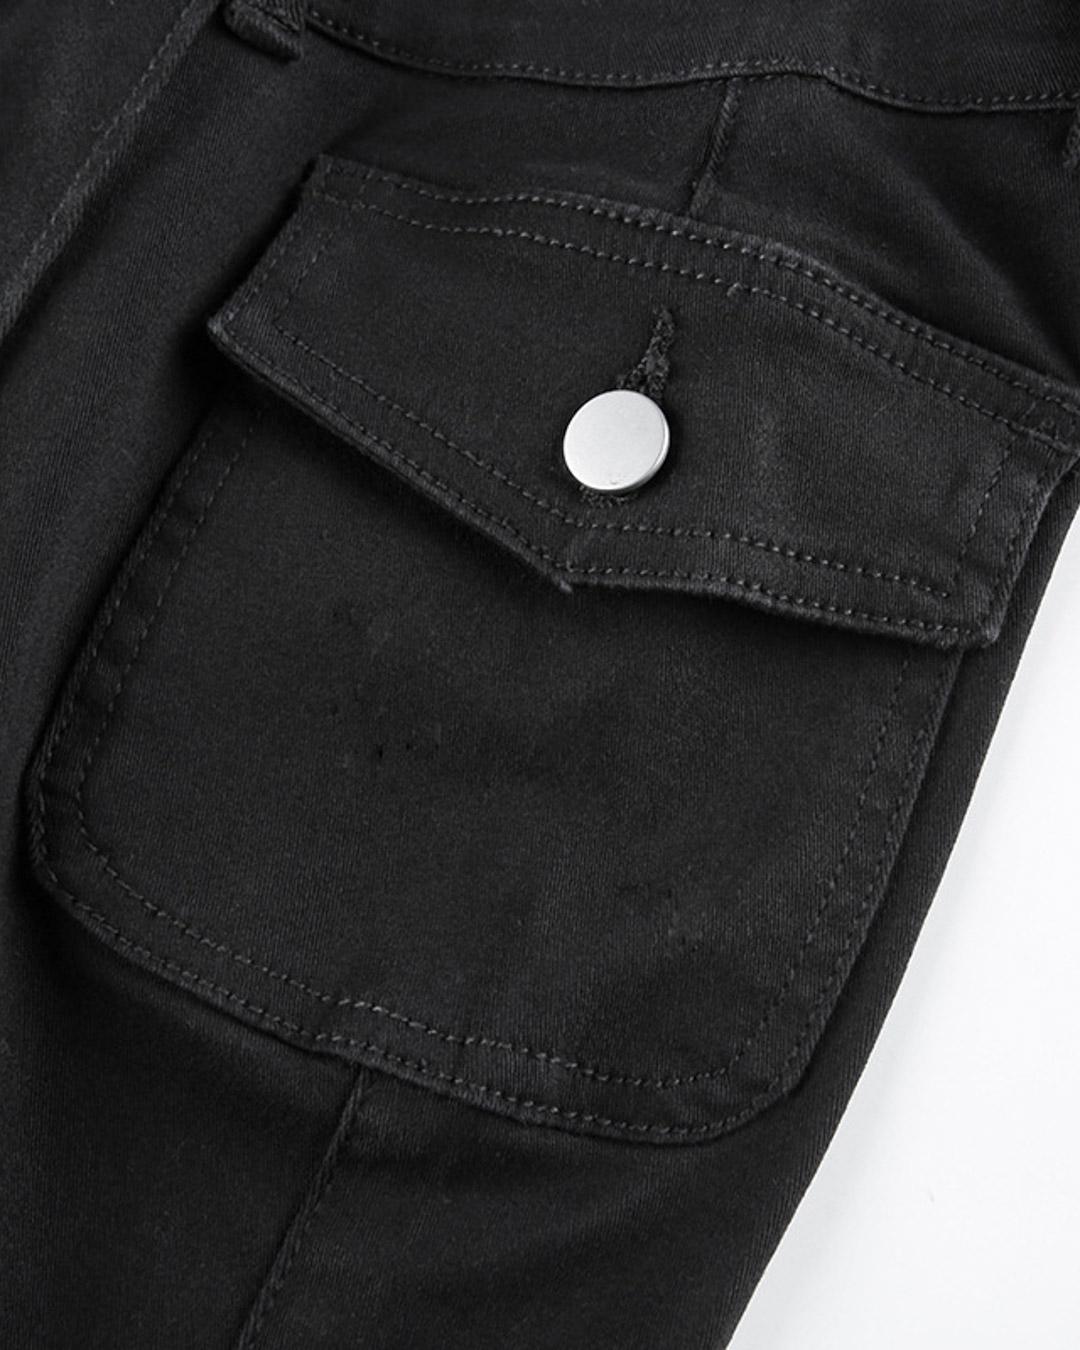 Low-rise Pocket Design Flared Leg Denim Jeans